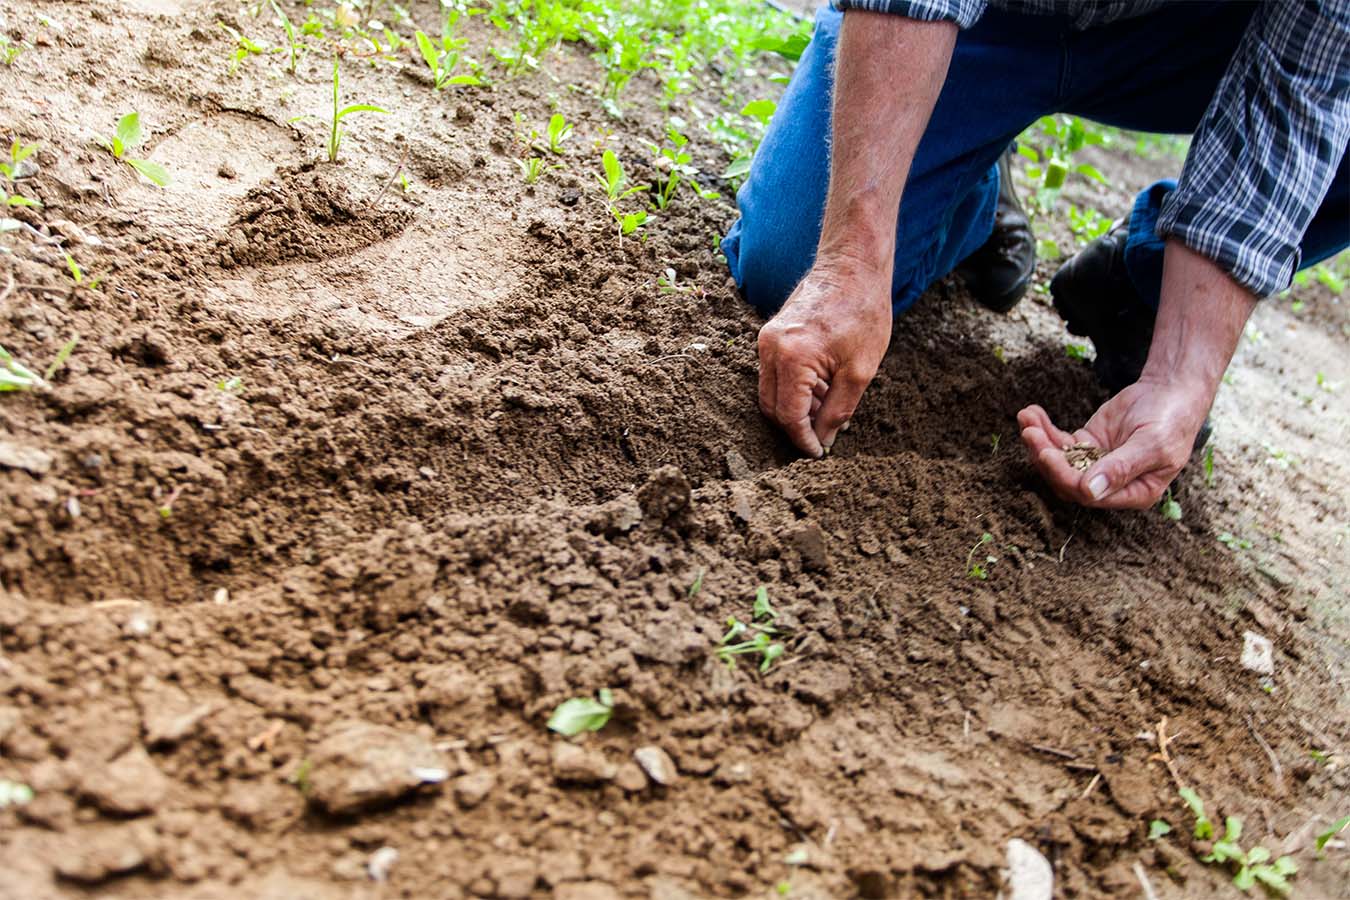 Terracal - Cal agrícola tratamiento acides del suelo en Chiriquí, Panamá